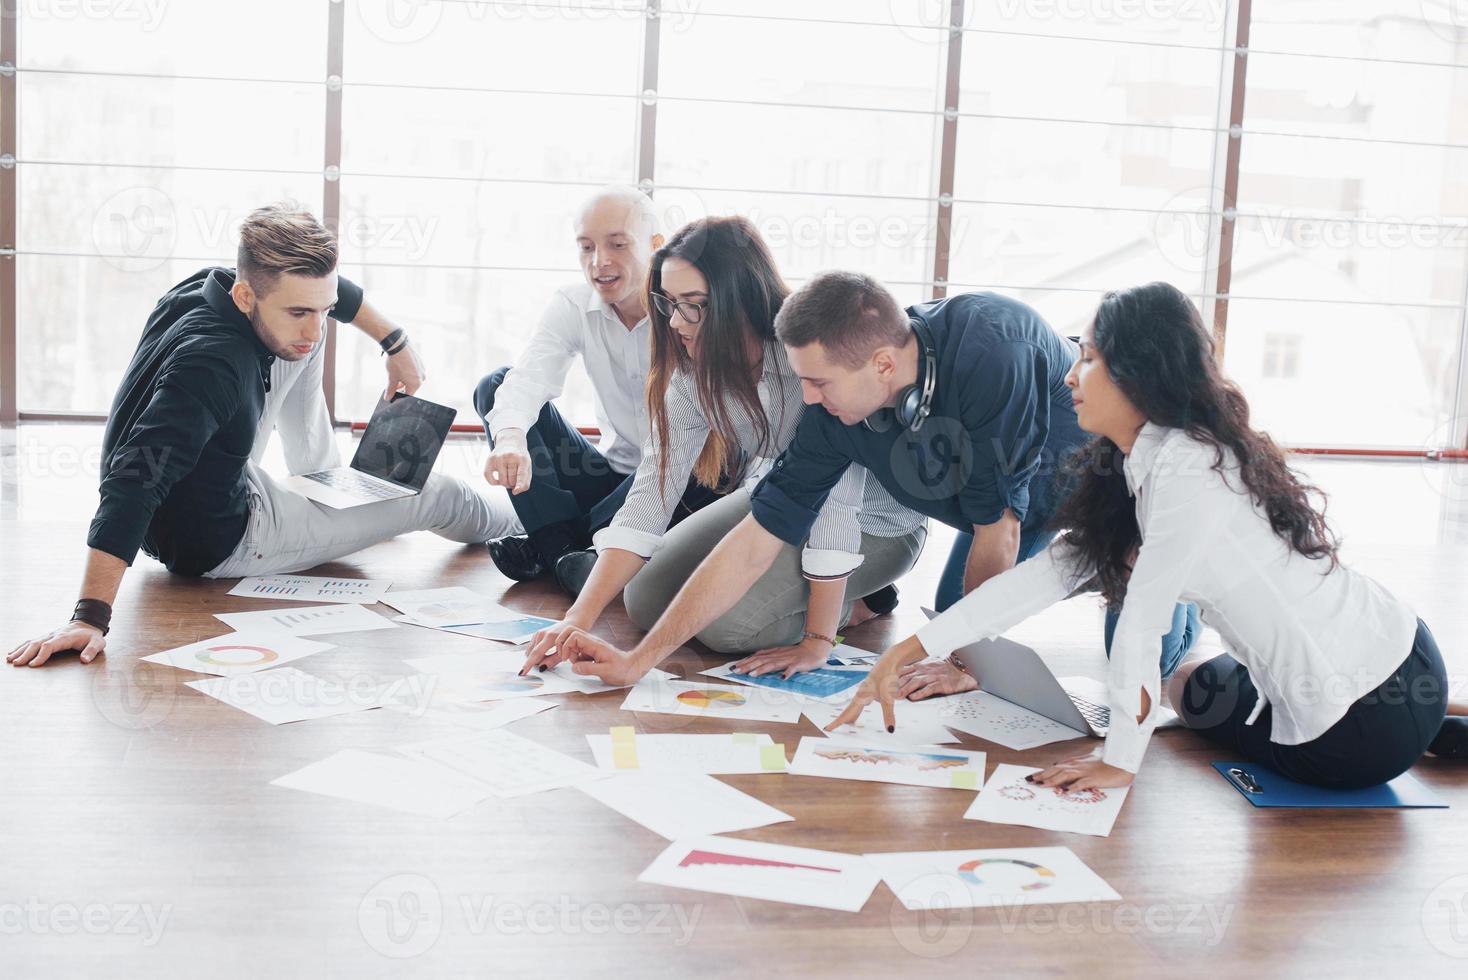 planningsstrategie samen. business team kijkt naar papieren op de vloer met manager die naar één idee wijst. samenwerking corporate prestatie. planning ontwerp tekenen. teamwork concept foto